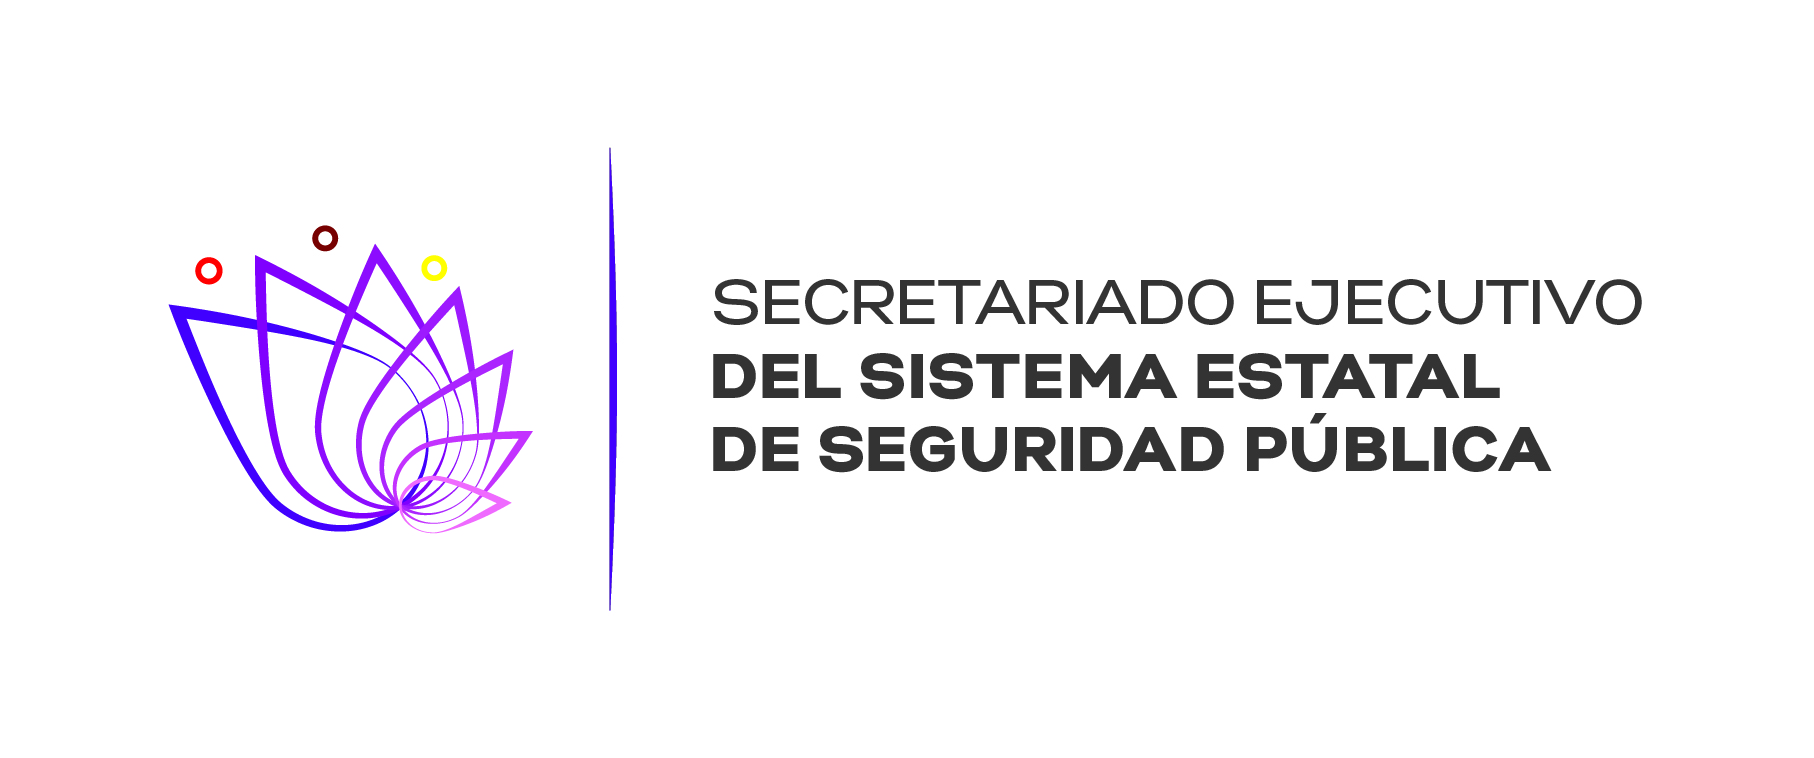 Secretariado Ejecutivo del Sistema Estatal de Seguridad Pública